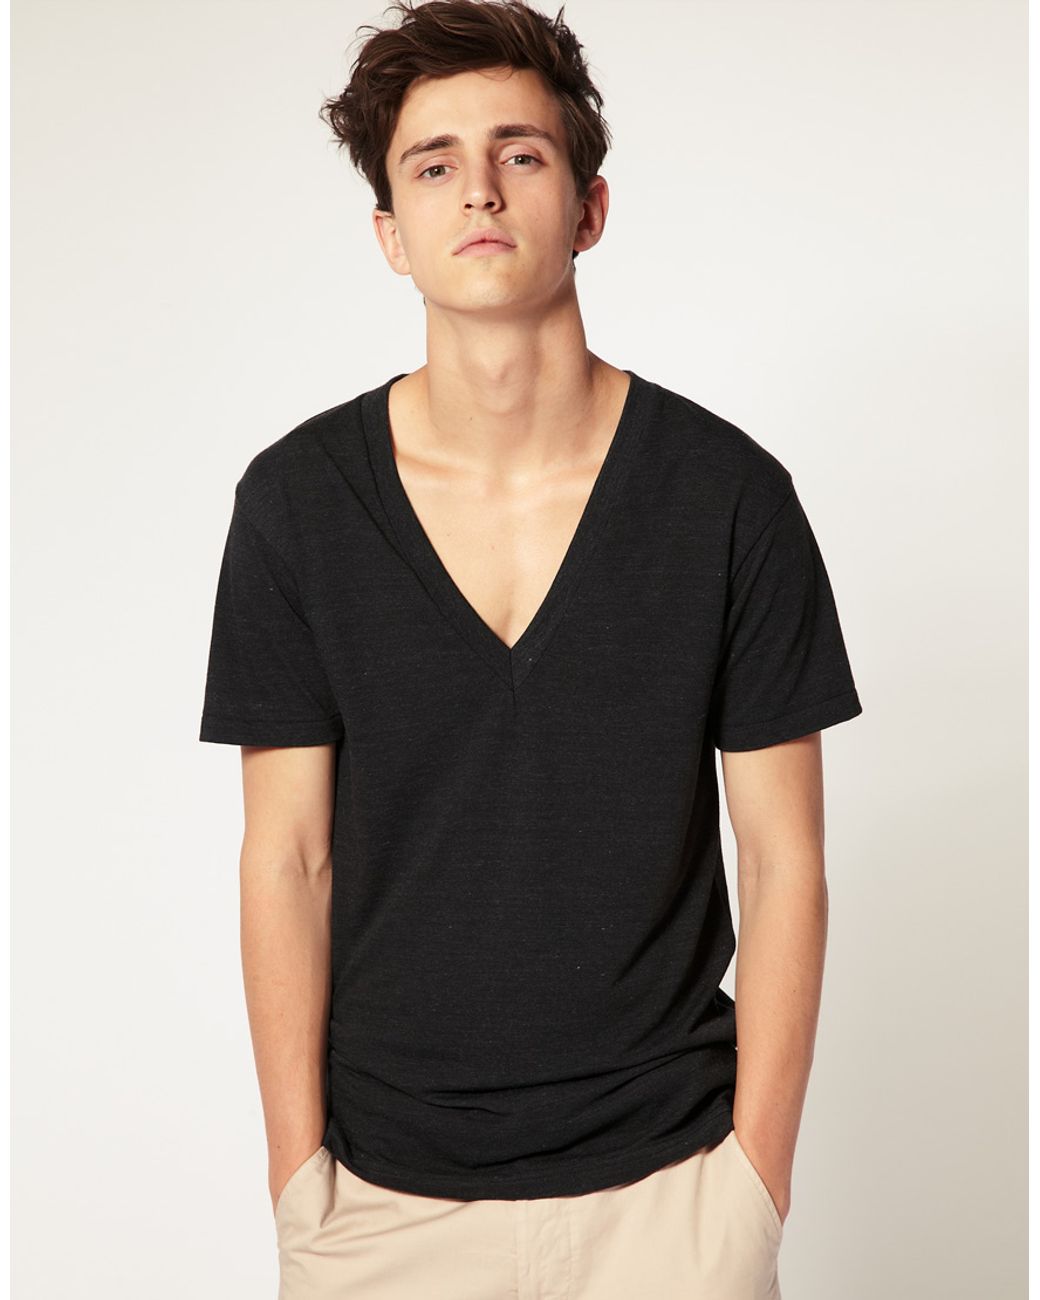 American Apparel Tri-Blend Deep V-Neck T-shirt in Black for Men